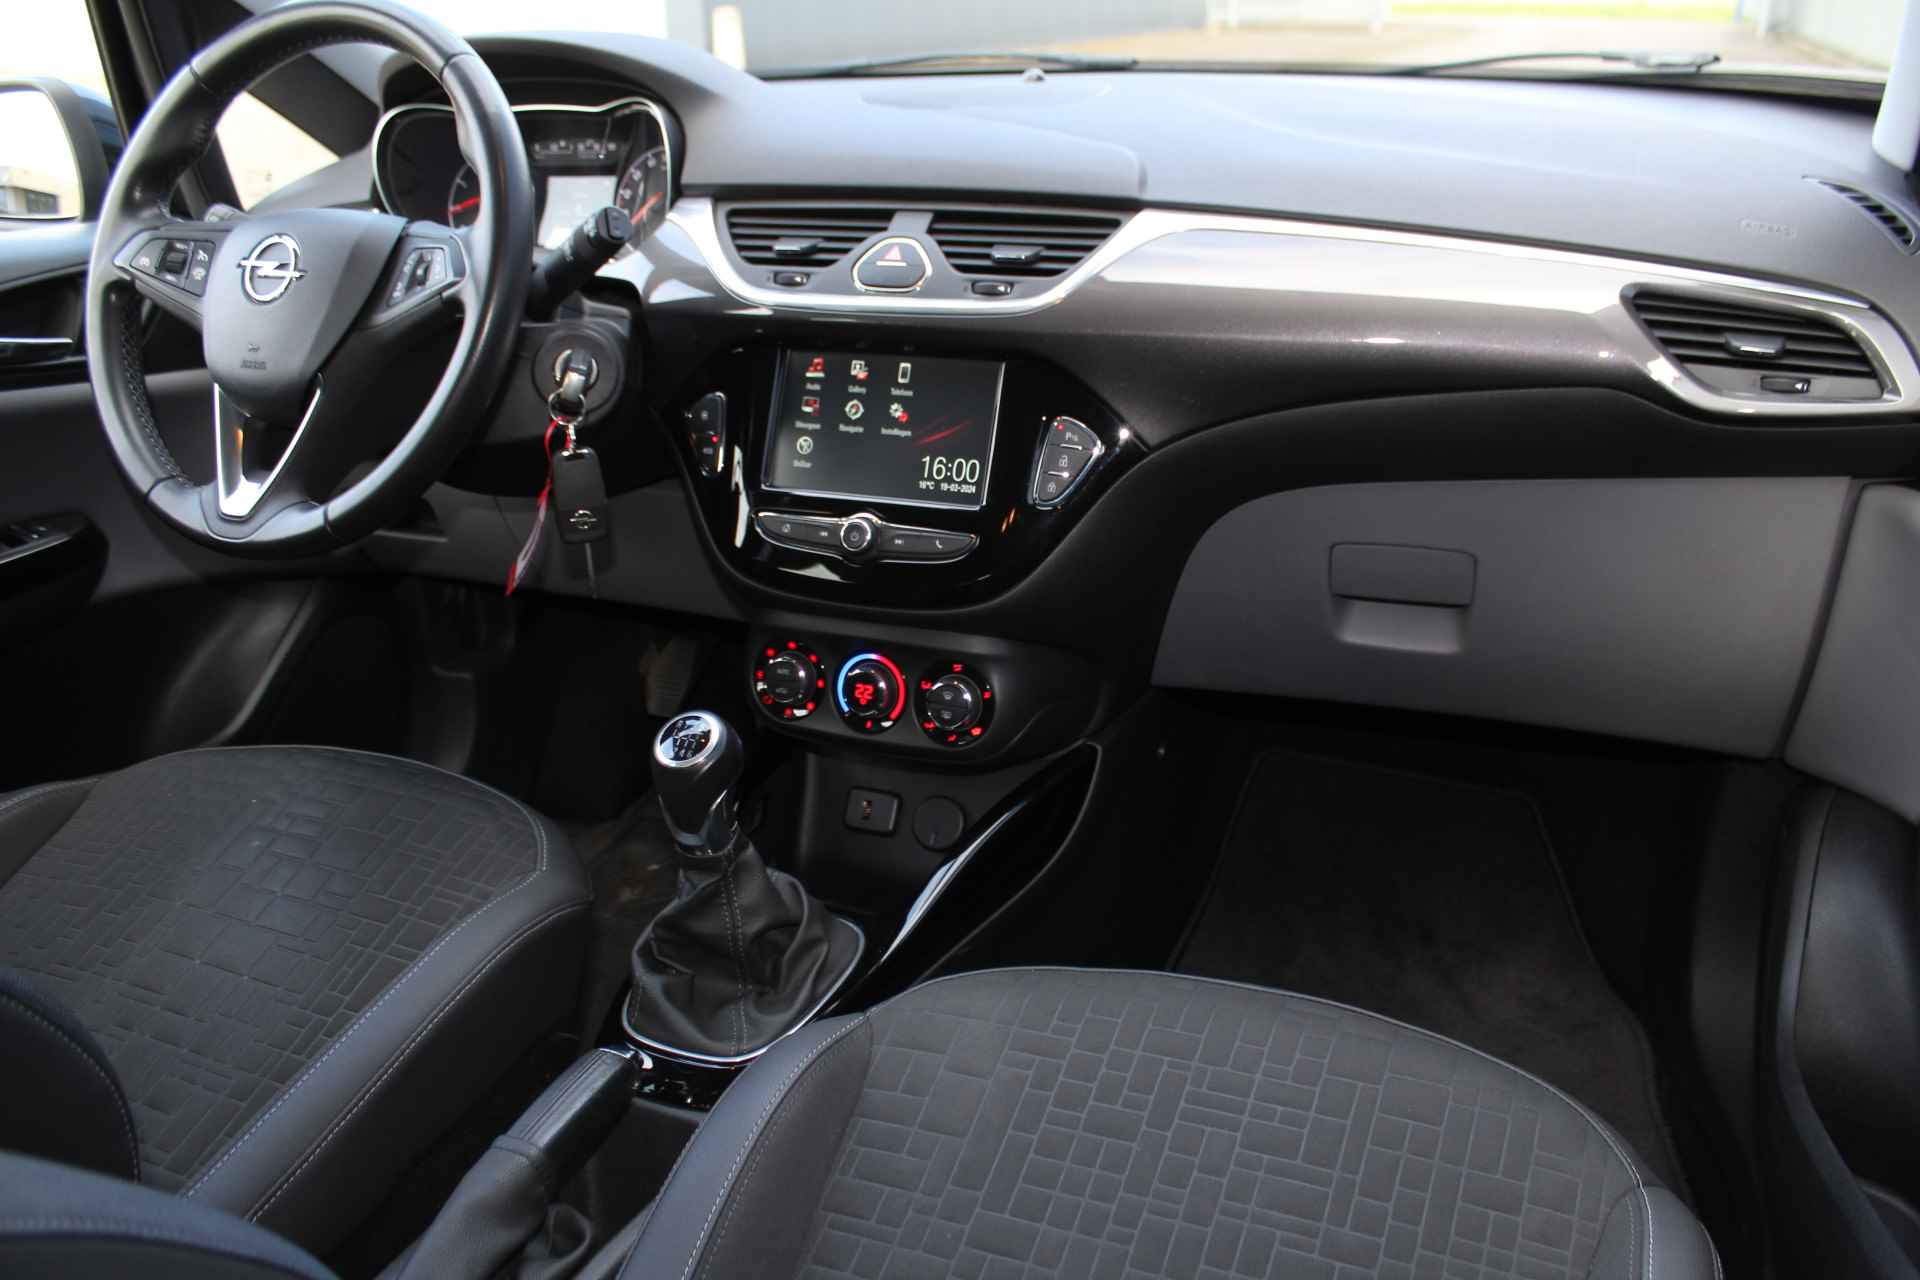 Opel Corsa 1.0-90pk Turbo 'Online Edition'. Erg nette en goed onderhouden Opel Corsa 1.0-90pk Turbo 5drs.. Volautm. airco, cruise control, navigatie, trekhaak afneembare kogel, metallic lak, parkeersensoren v+a, LM wielen, telefoonvoorb., 5 deuren etc. - 39/45